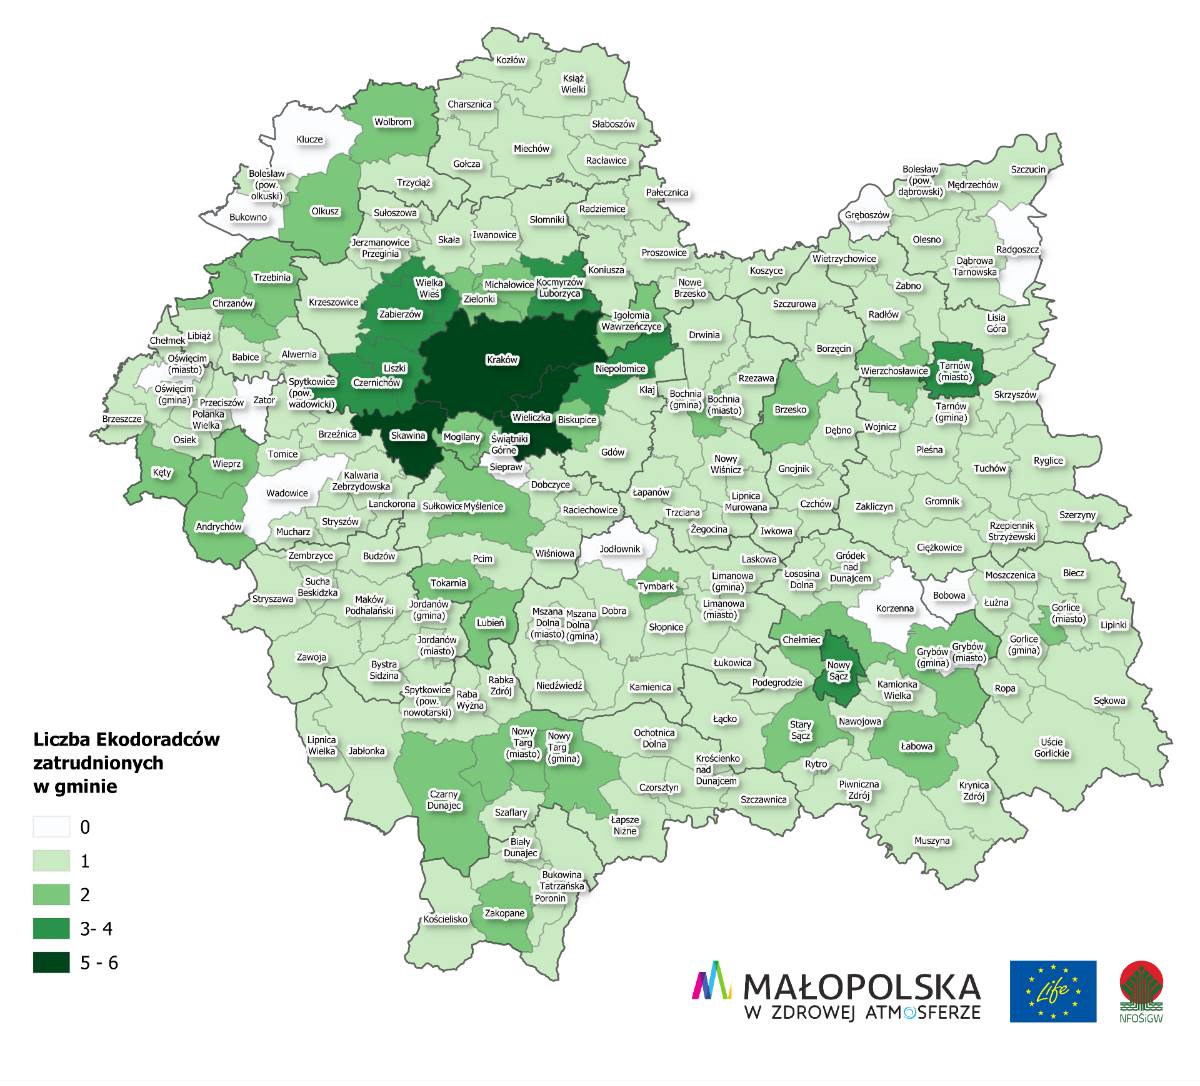 Mapka przedstawiająca liczbę ekodoradców zatrudnionych w różnych gminach Małopolski